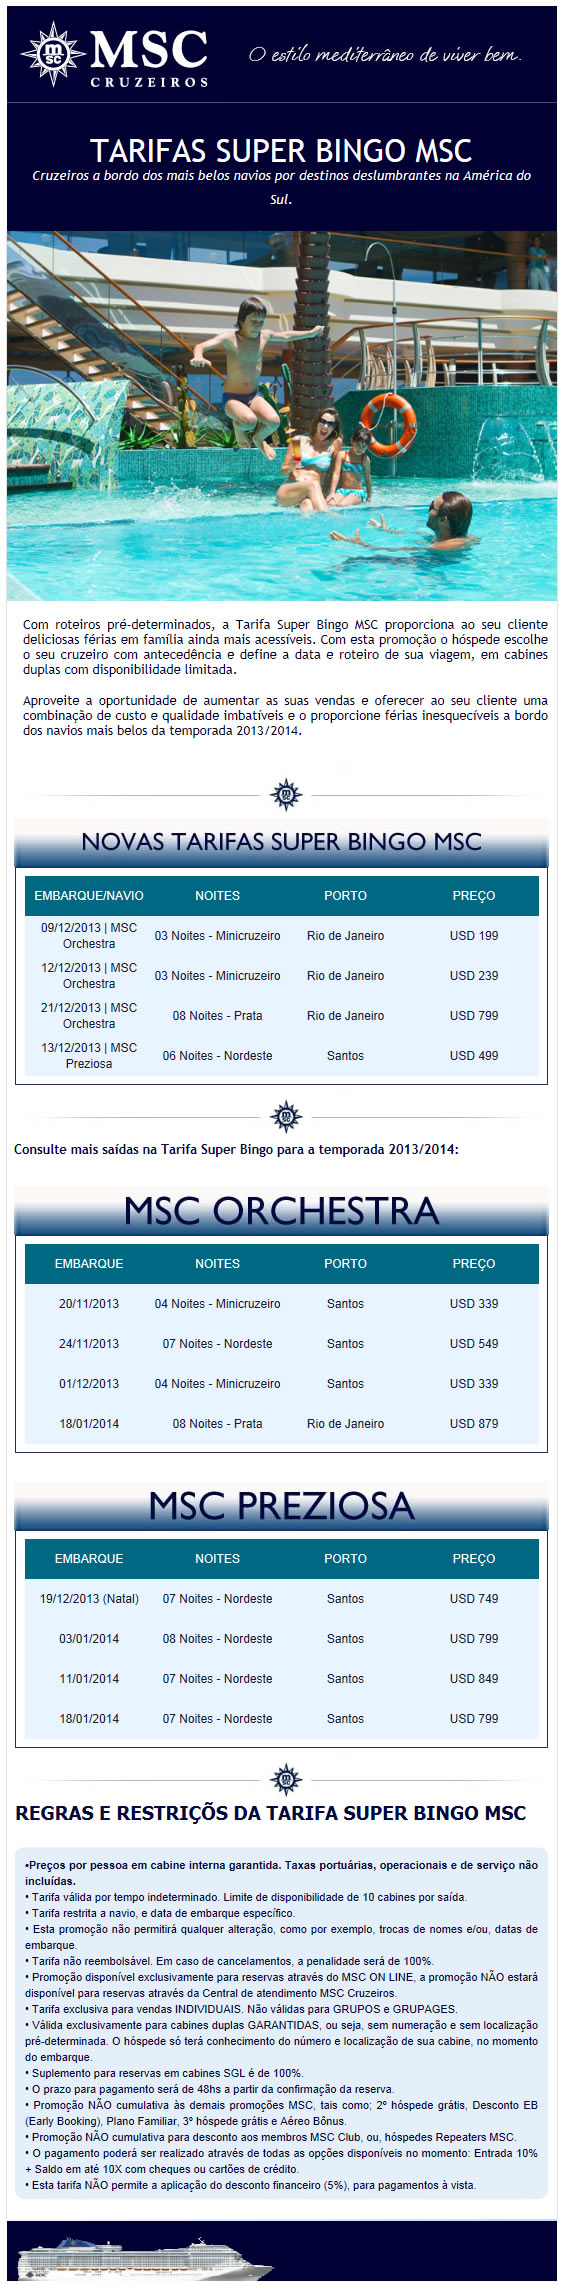 MSC Cruzeiros Amrica do Sul